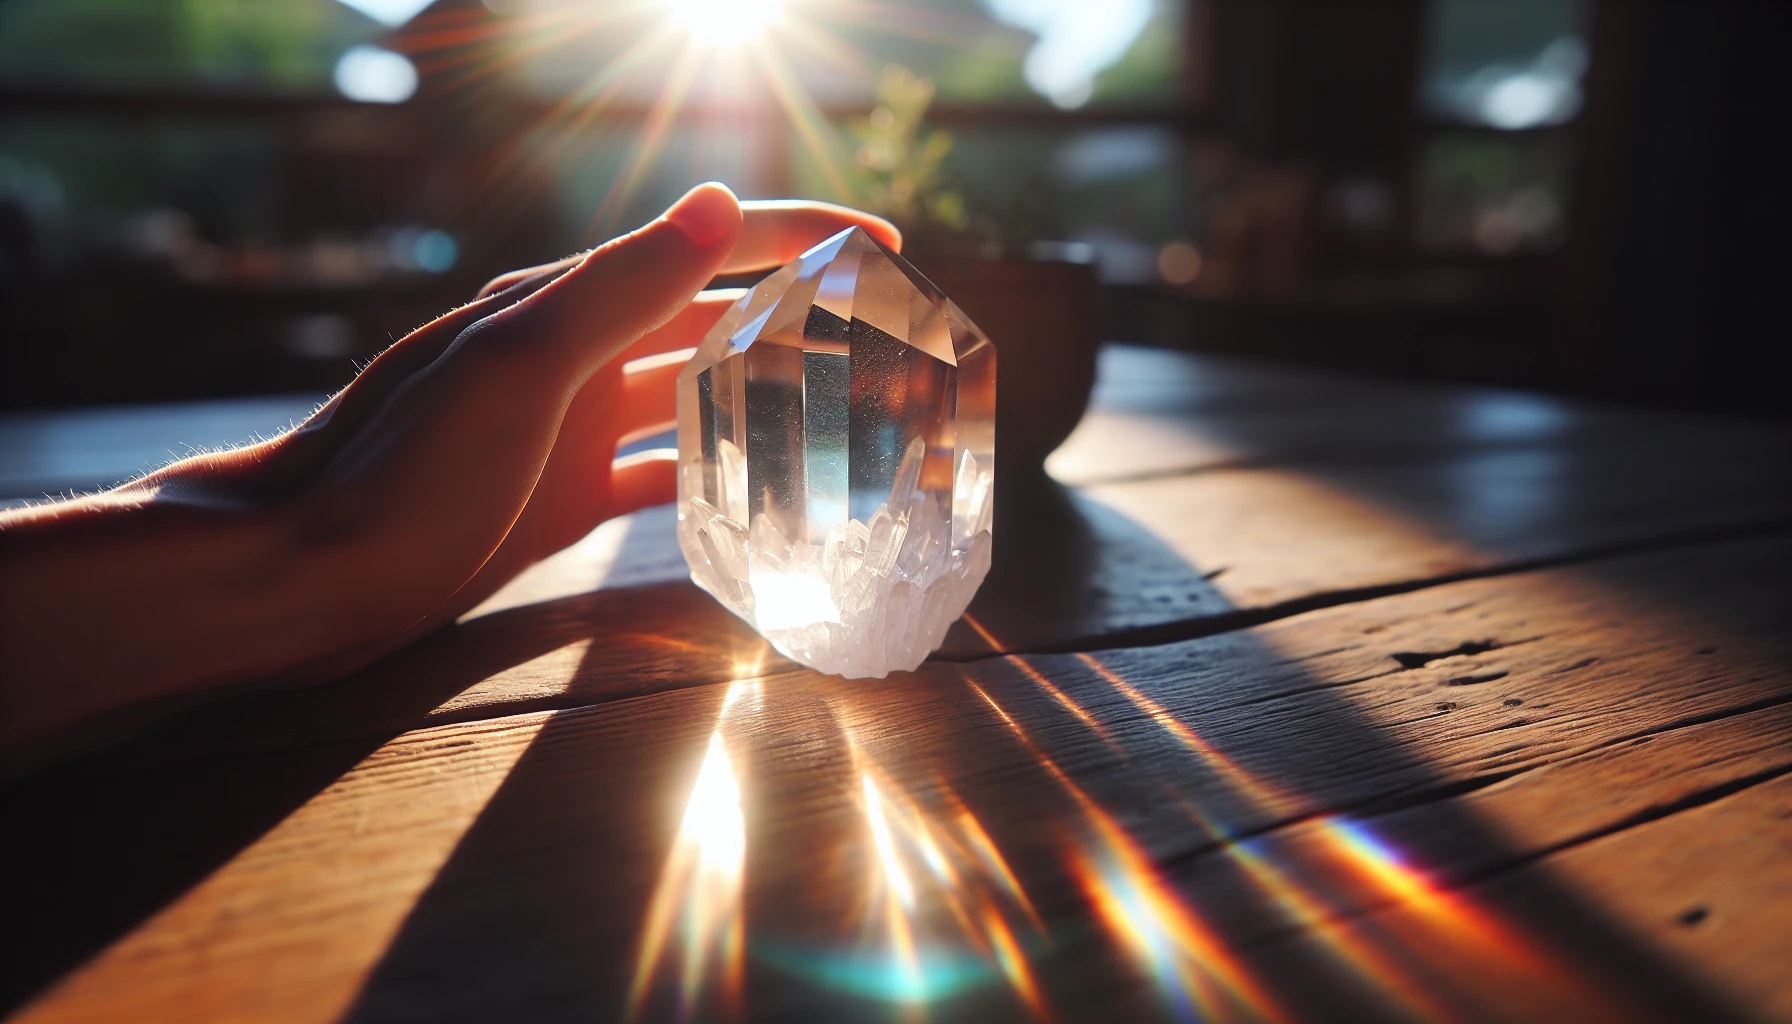 Clear quartz exposed to sunlight